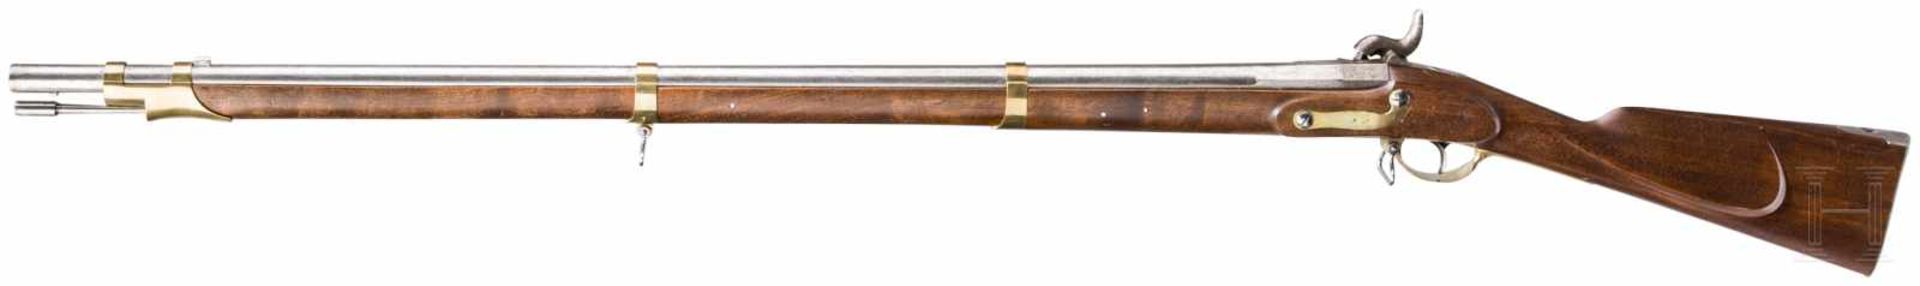 Preußisches Infanteriegewehr M 1839 für die bayerische LandwehrGlatter Lauf im Kaliber 18 mm, auf